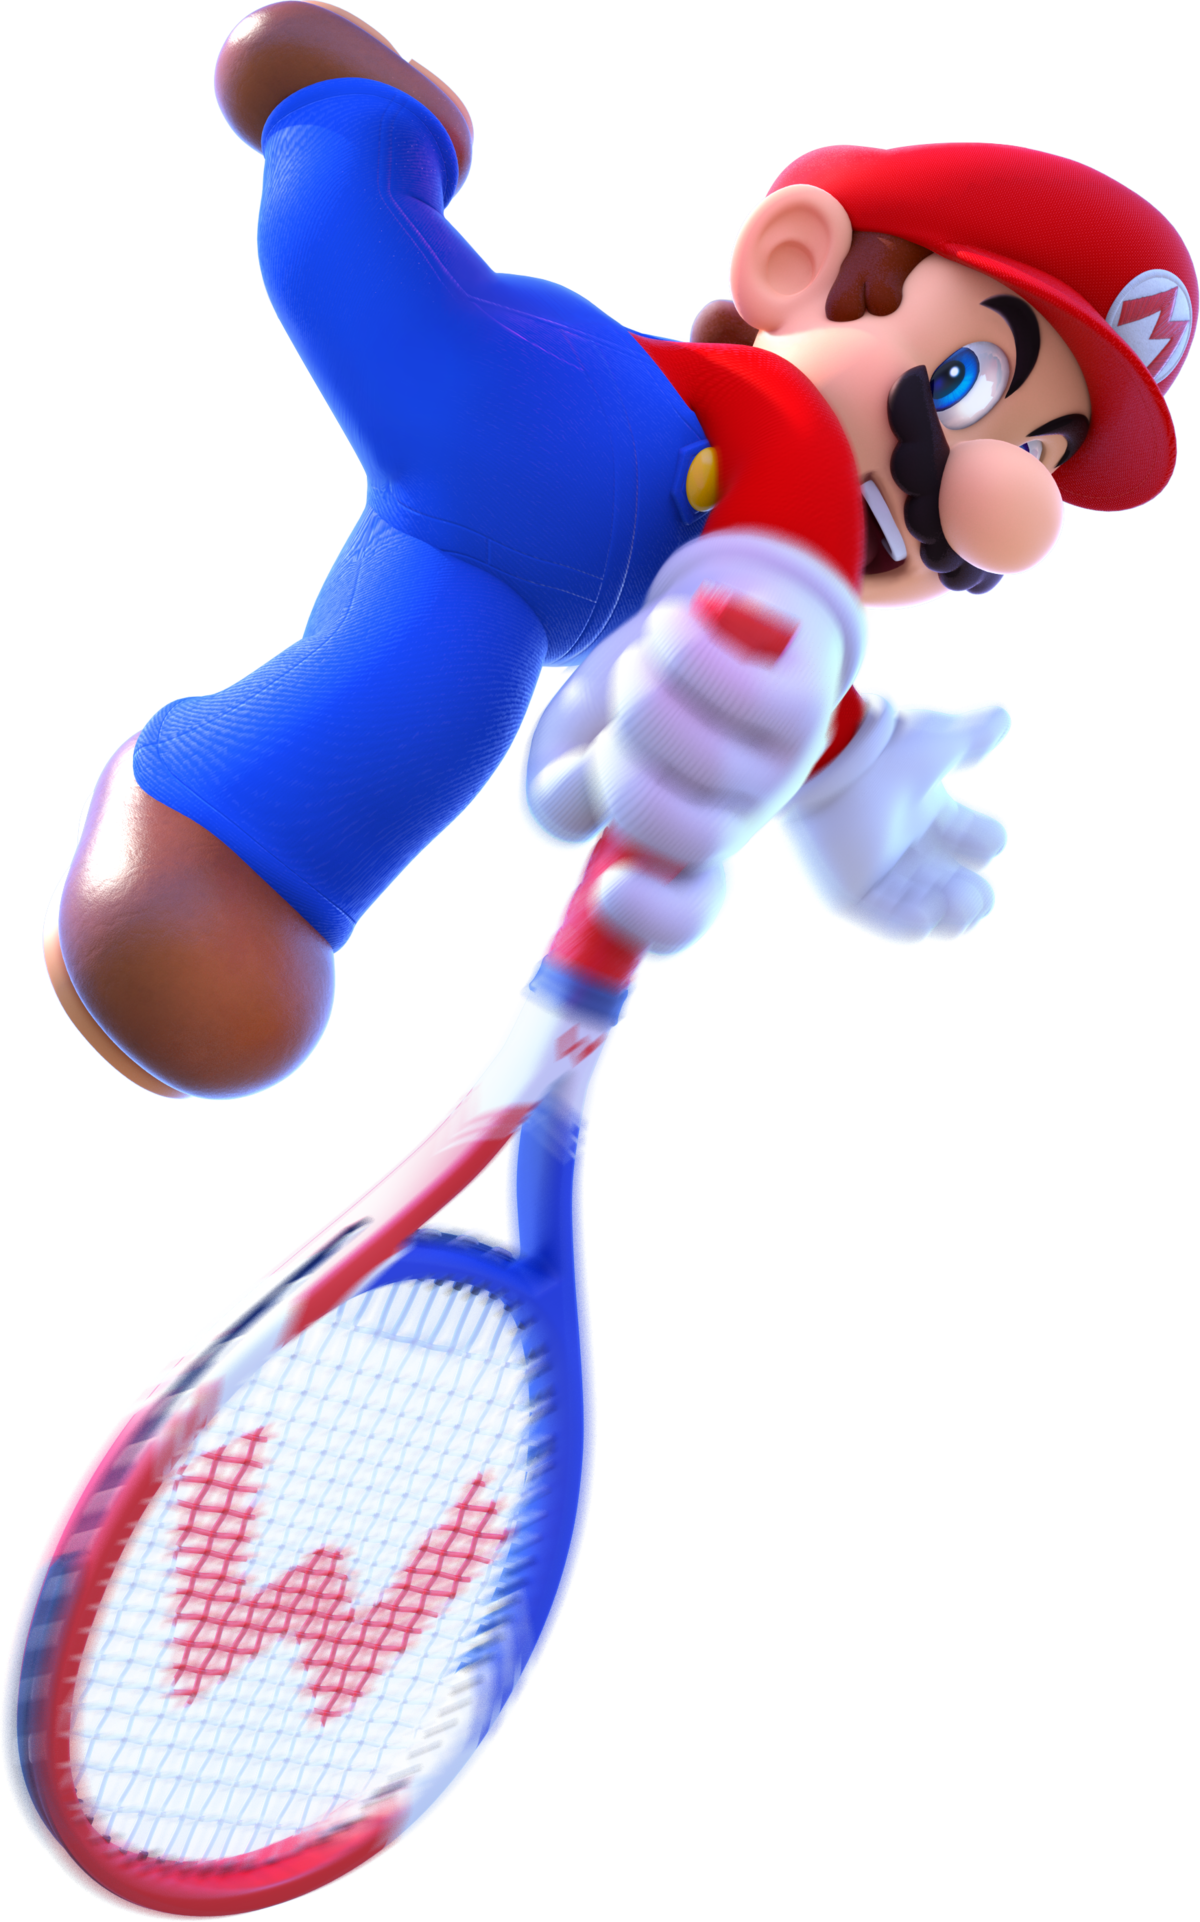 Filemario Alt 2 Mario Tennis Ultra Smashpng Super Mario Wiki The Mario Encyclopedia 0774